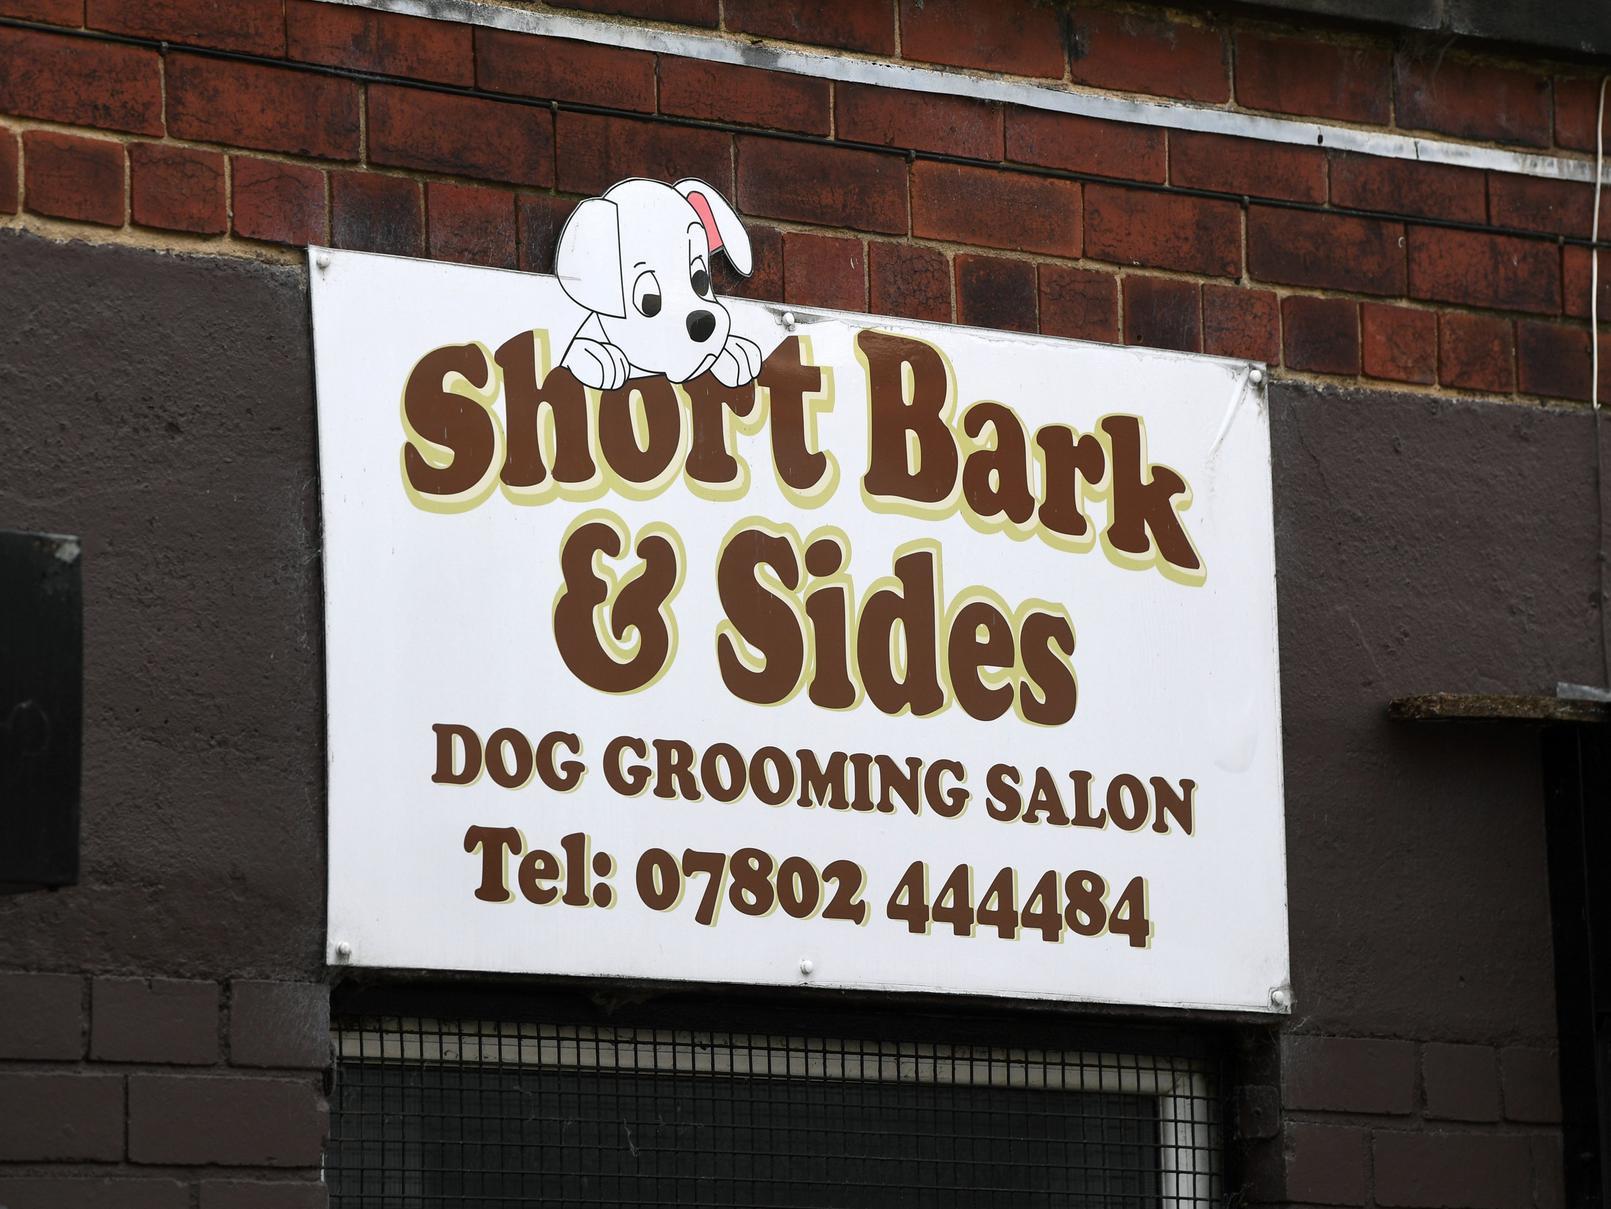 This dog grooming salon is based on Austhorpe Road in east Leeds.